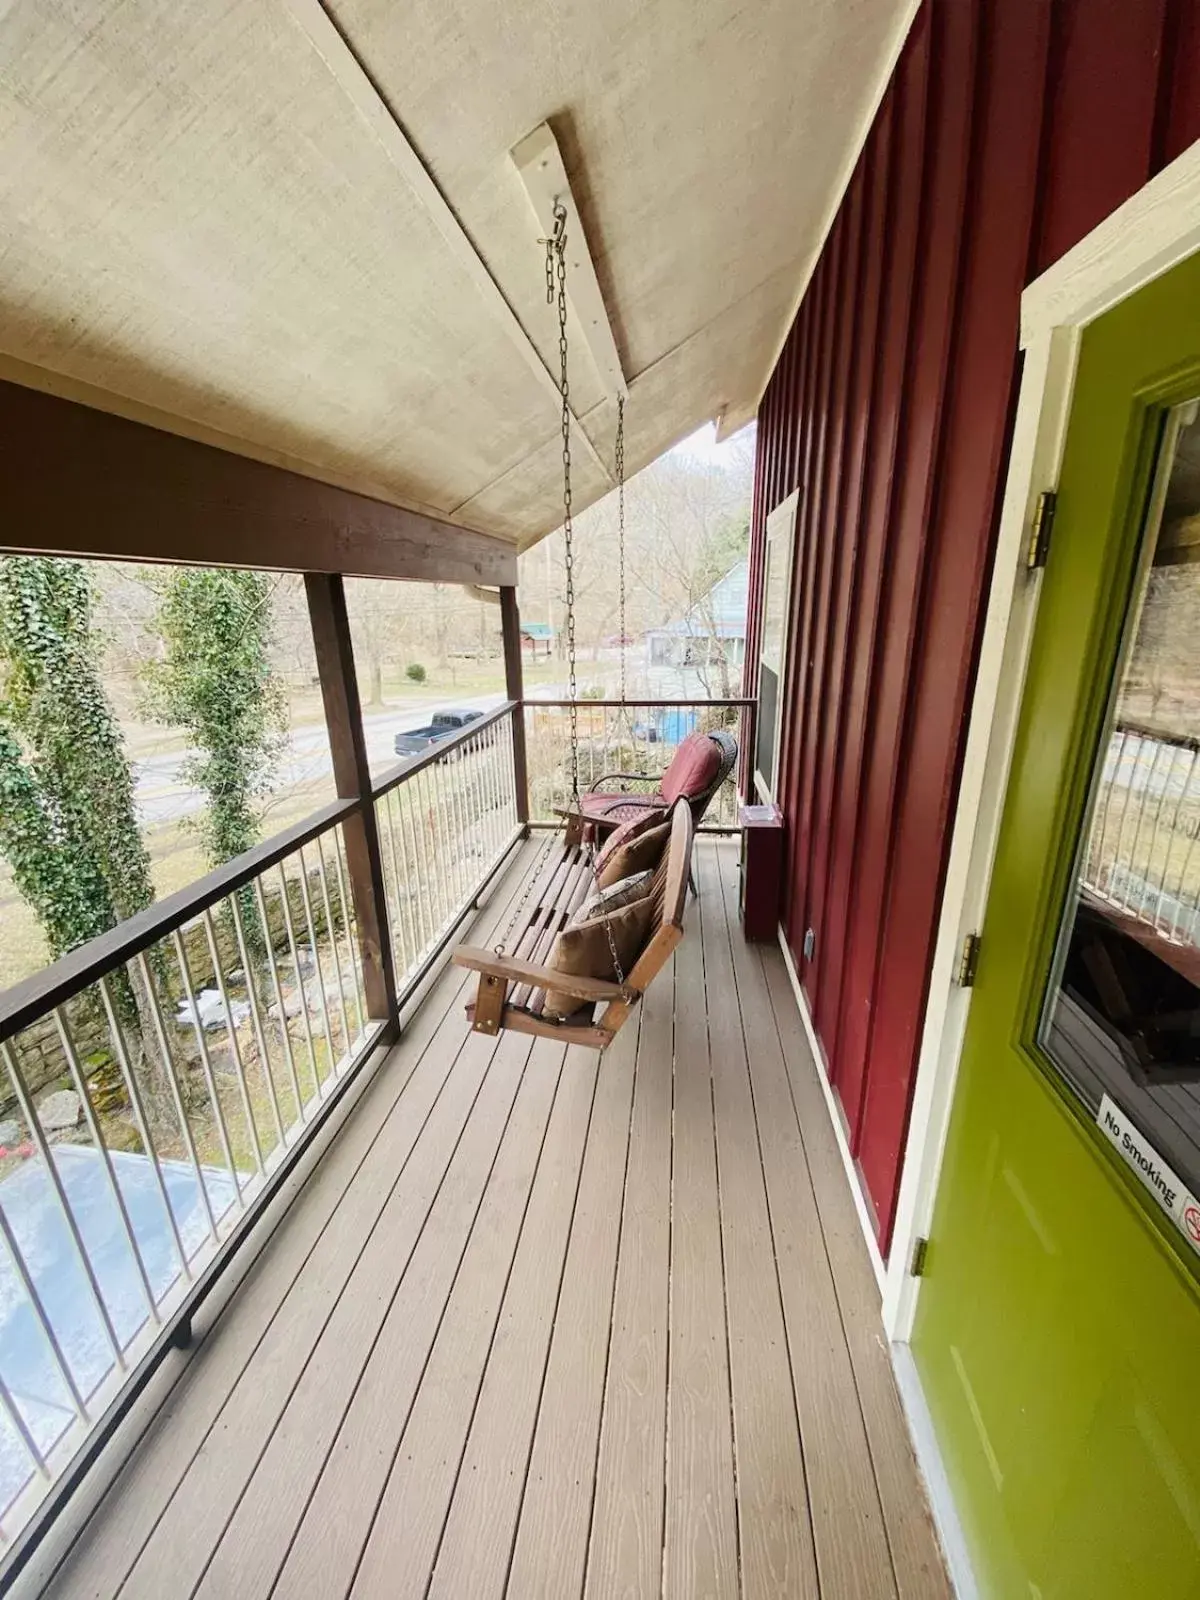 Balcony/Terrace in All Seasons Treehouse Village